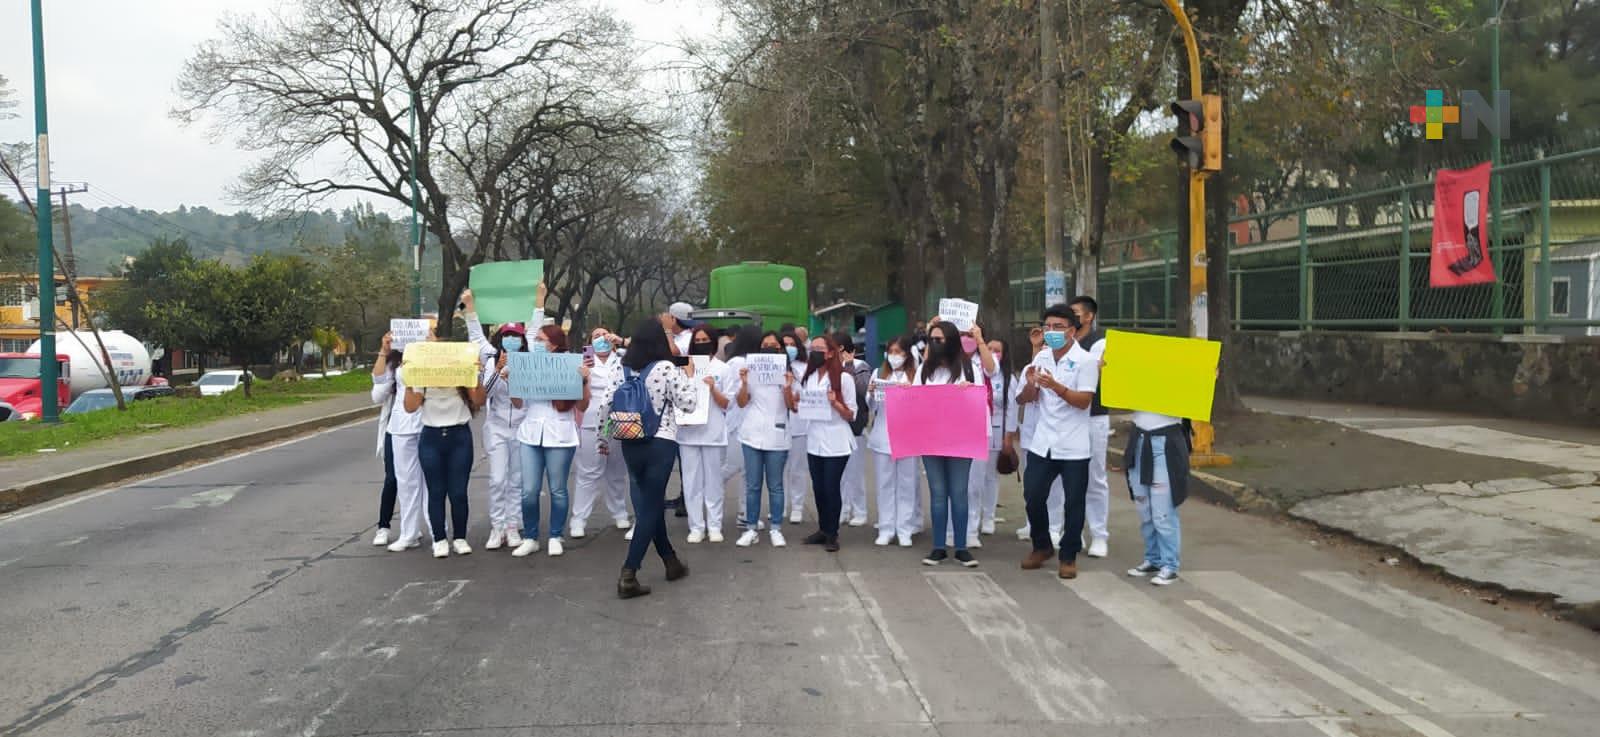 En Xalapa, estudiantes de Enfermería piden regreso a clases presenciales